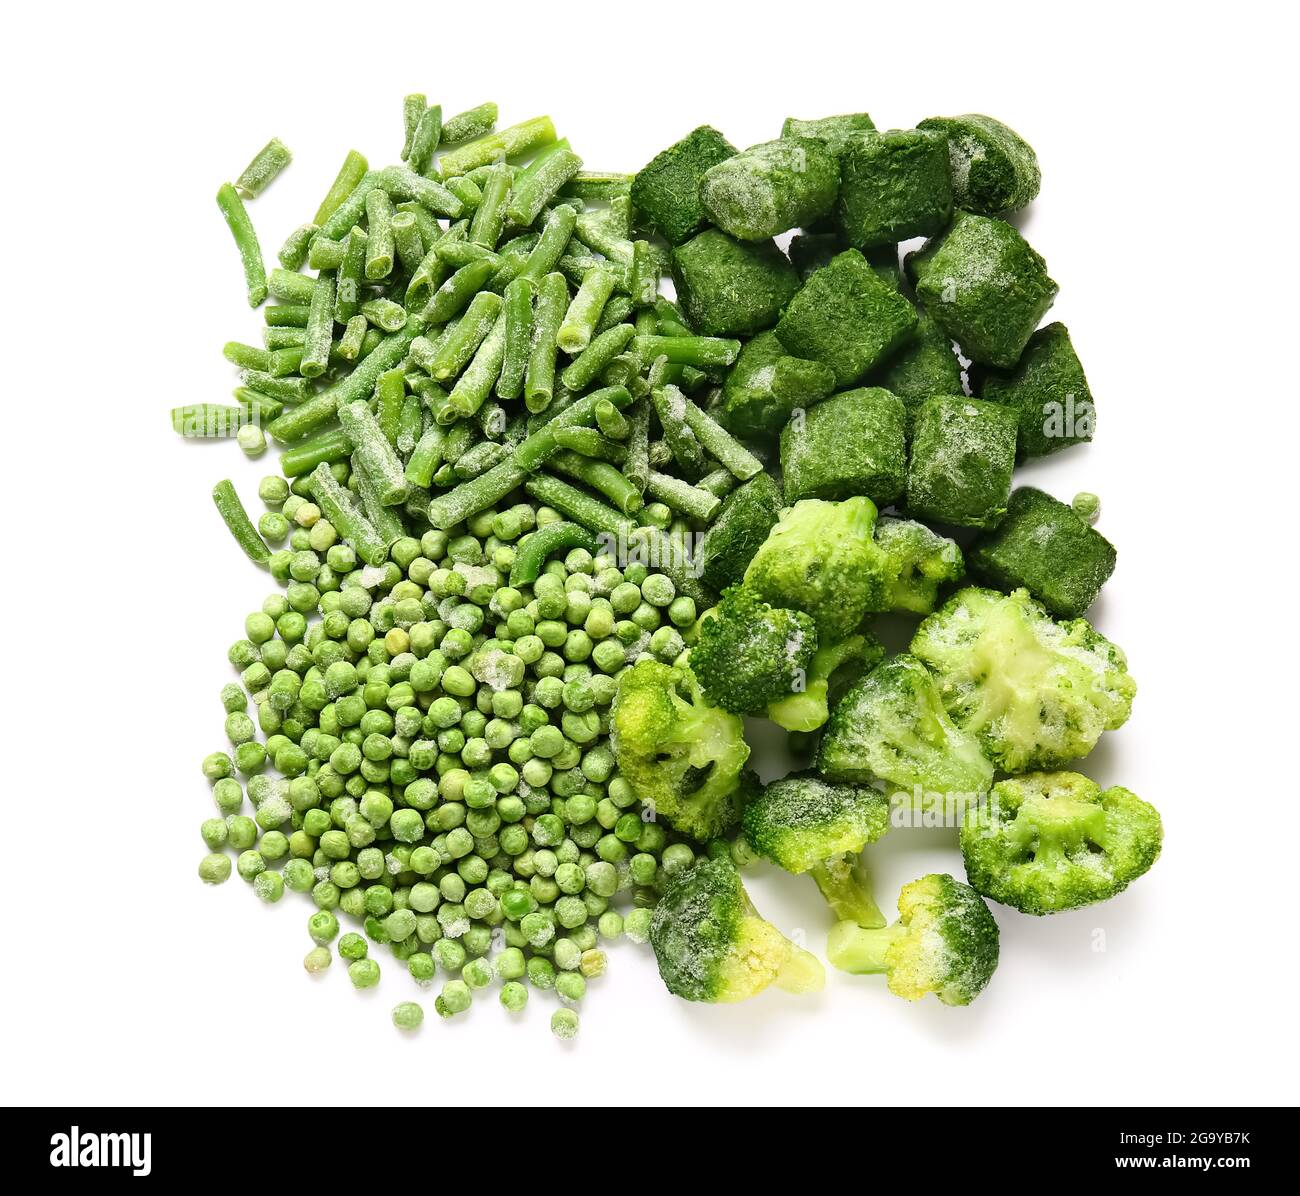 Tiefgefrorenes grünes Gemüse auf weißem Hintergrund Stockfotografie - Alamy